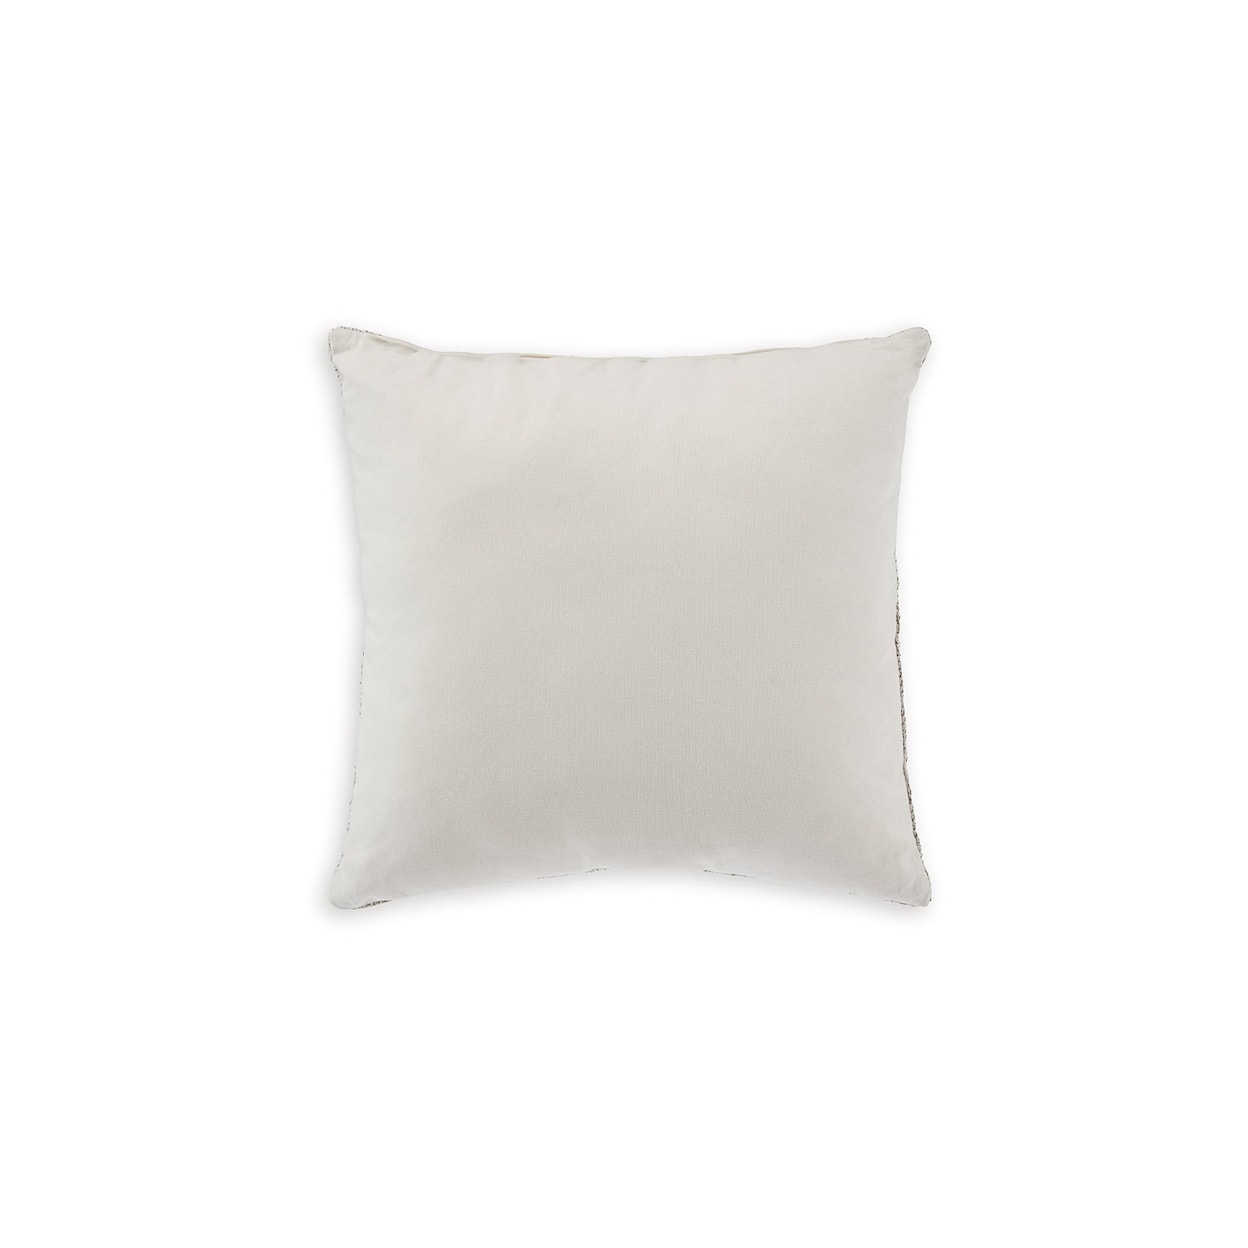 Signature Design Carddon Set of Pillows